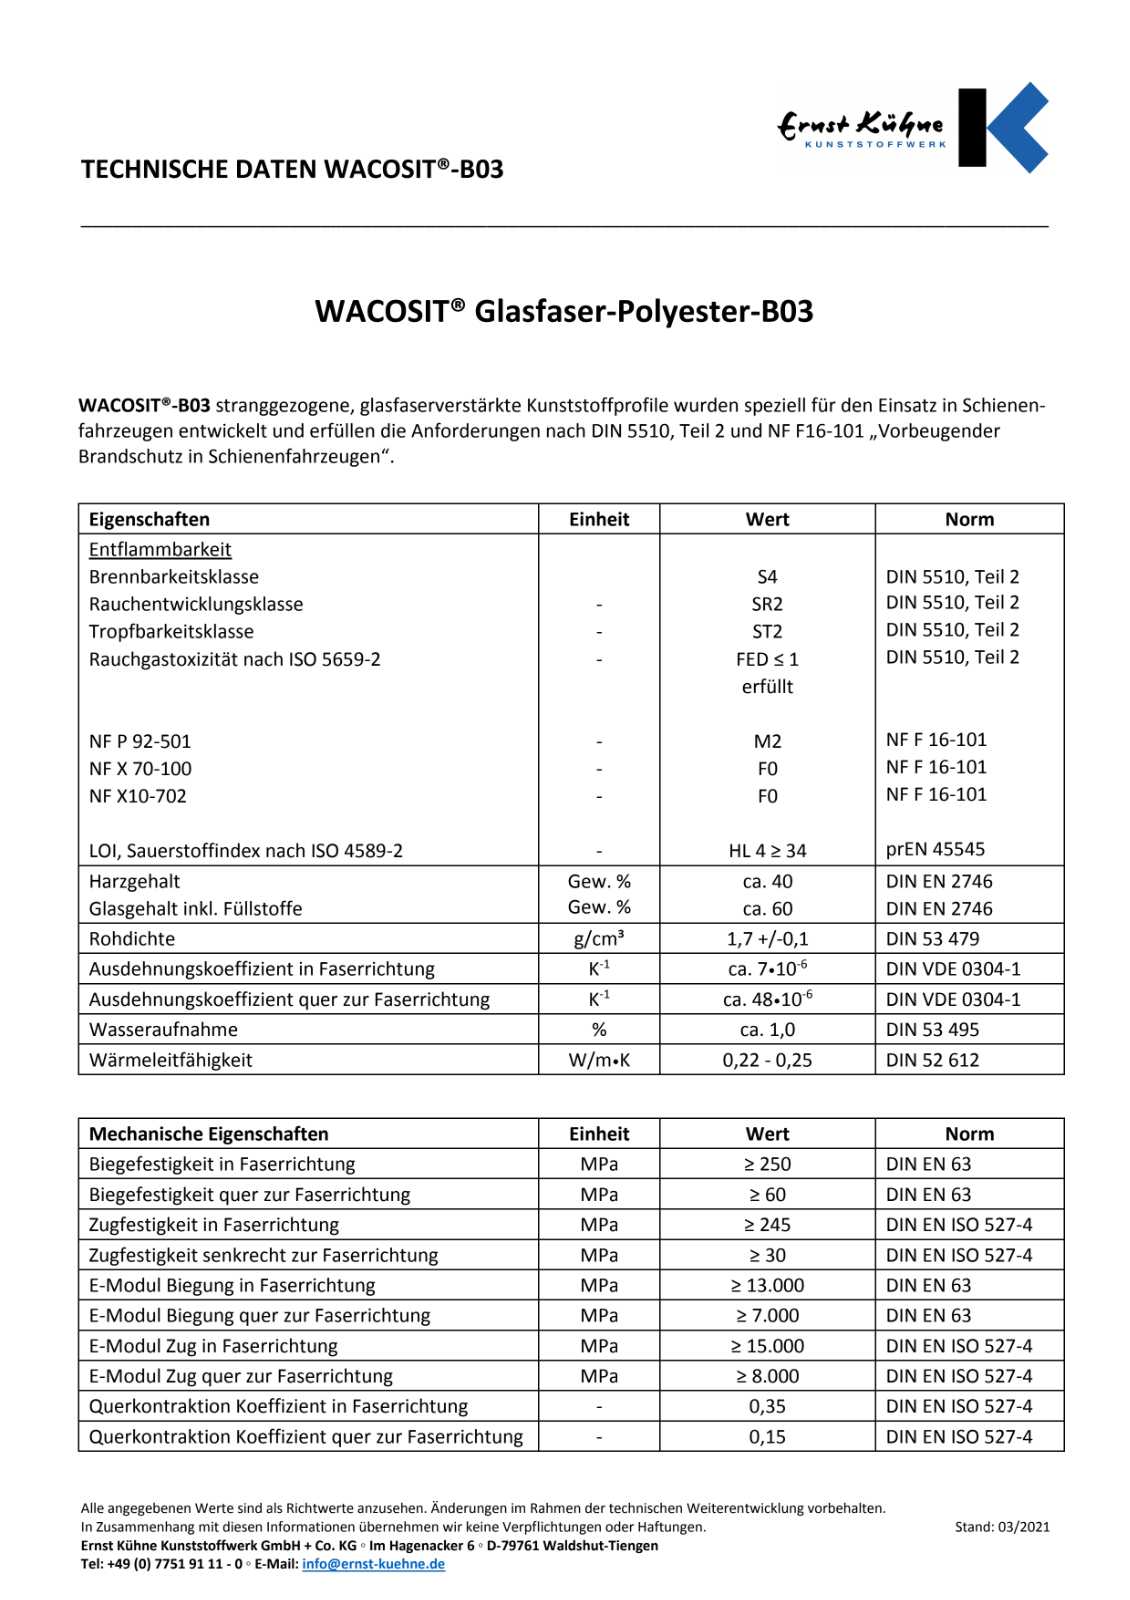 WACOSIT Technische Daten Glasfaser-Acryl B03